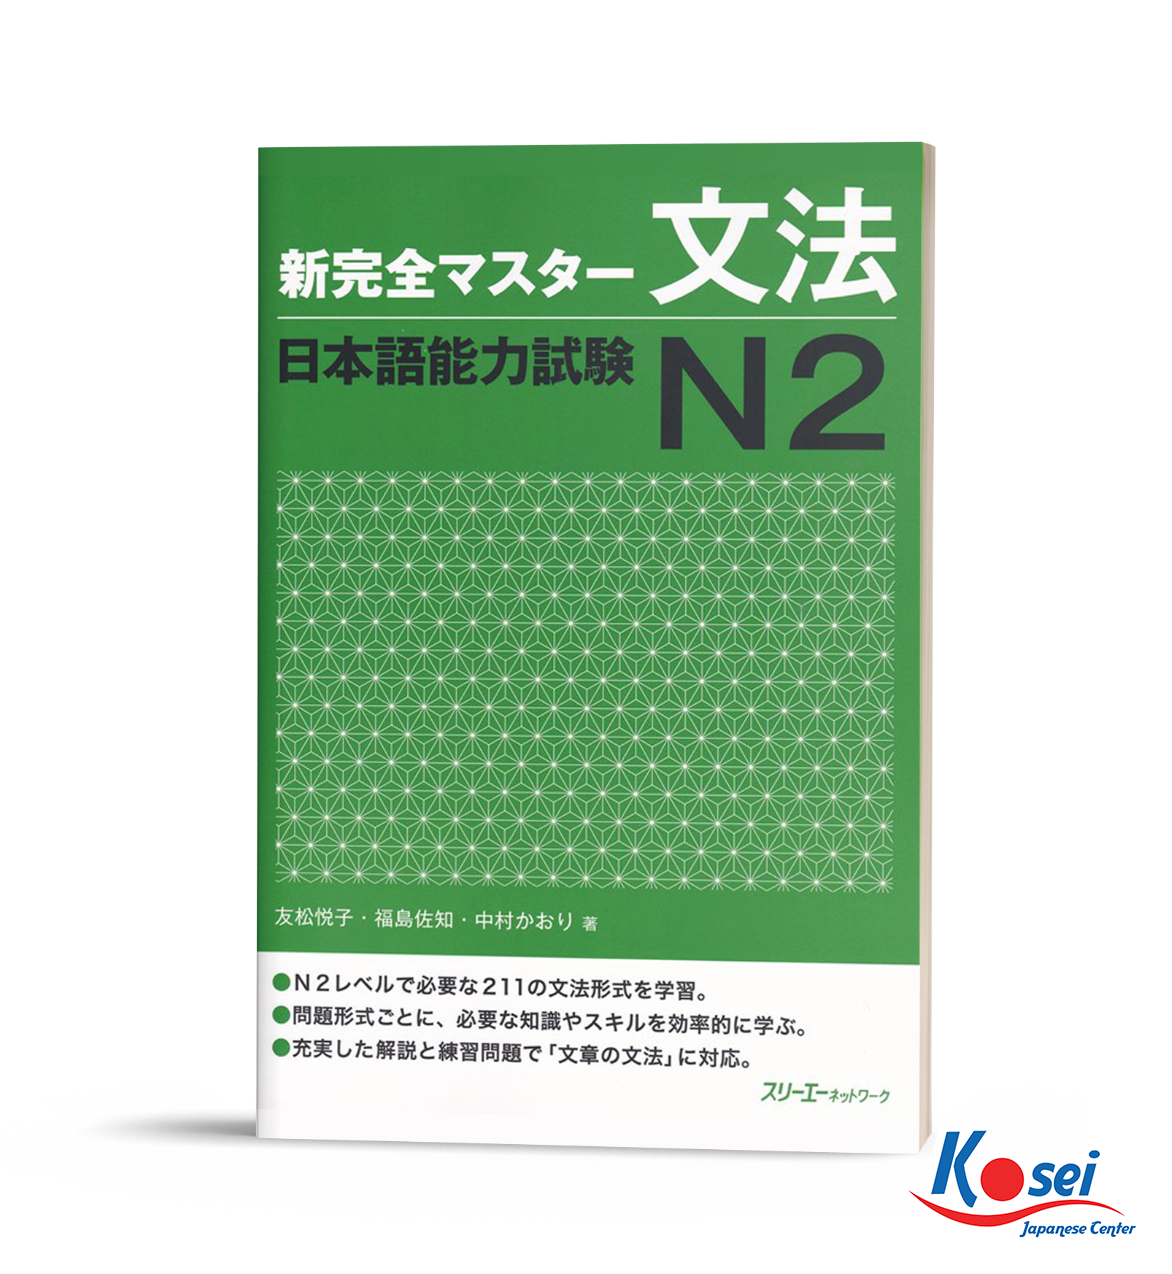 ngữ pháp n2 shinkanzen, shinkanzen bunpou n2, giáo trình ngữ pháp n2